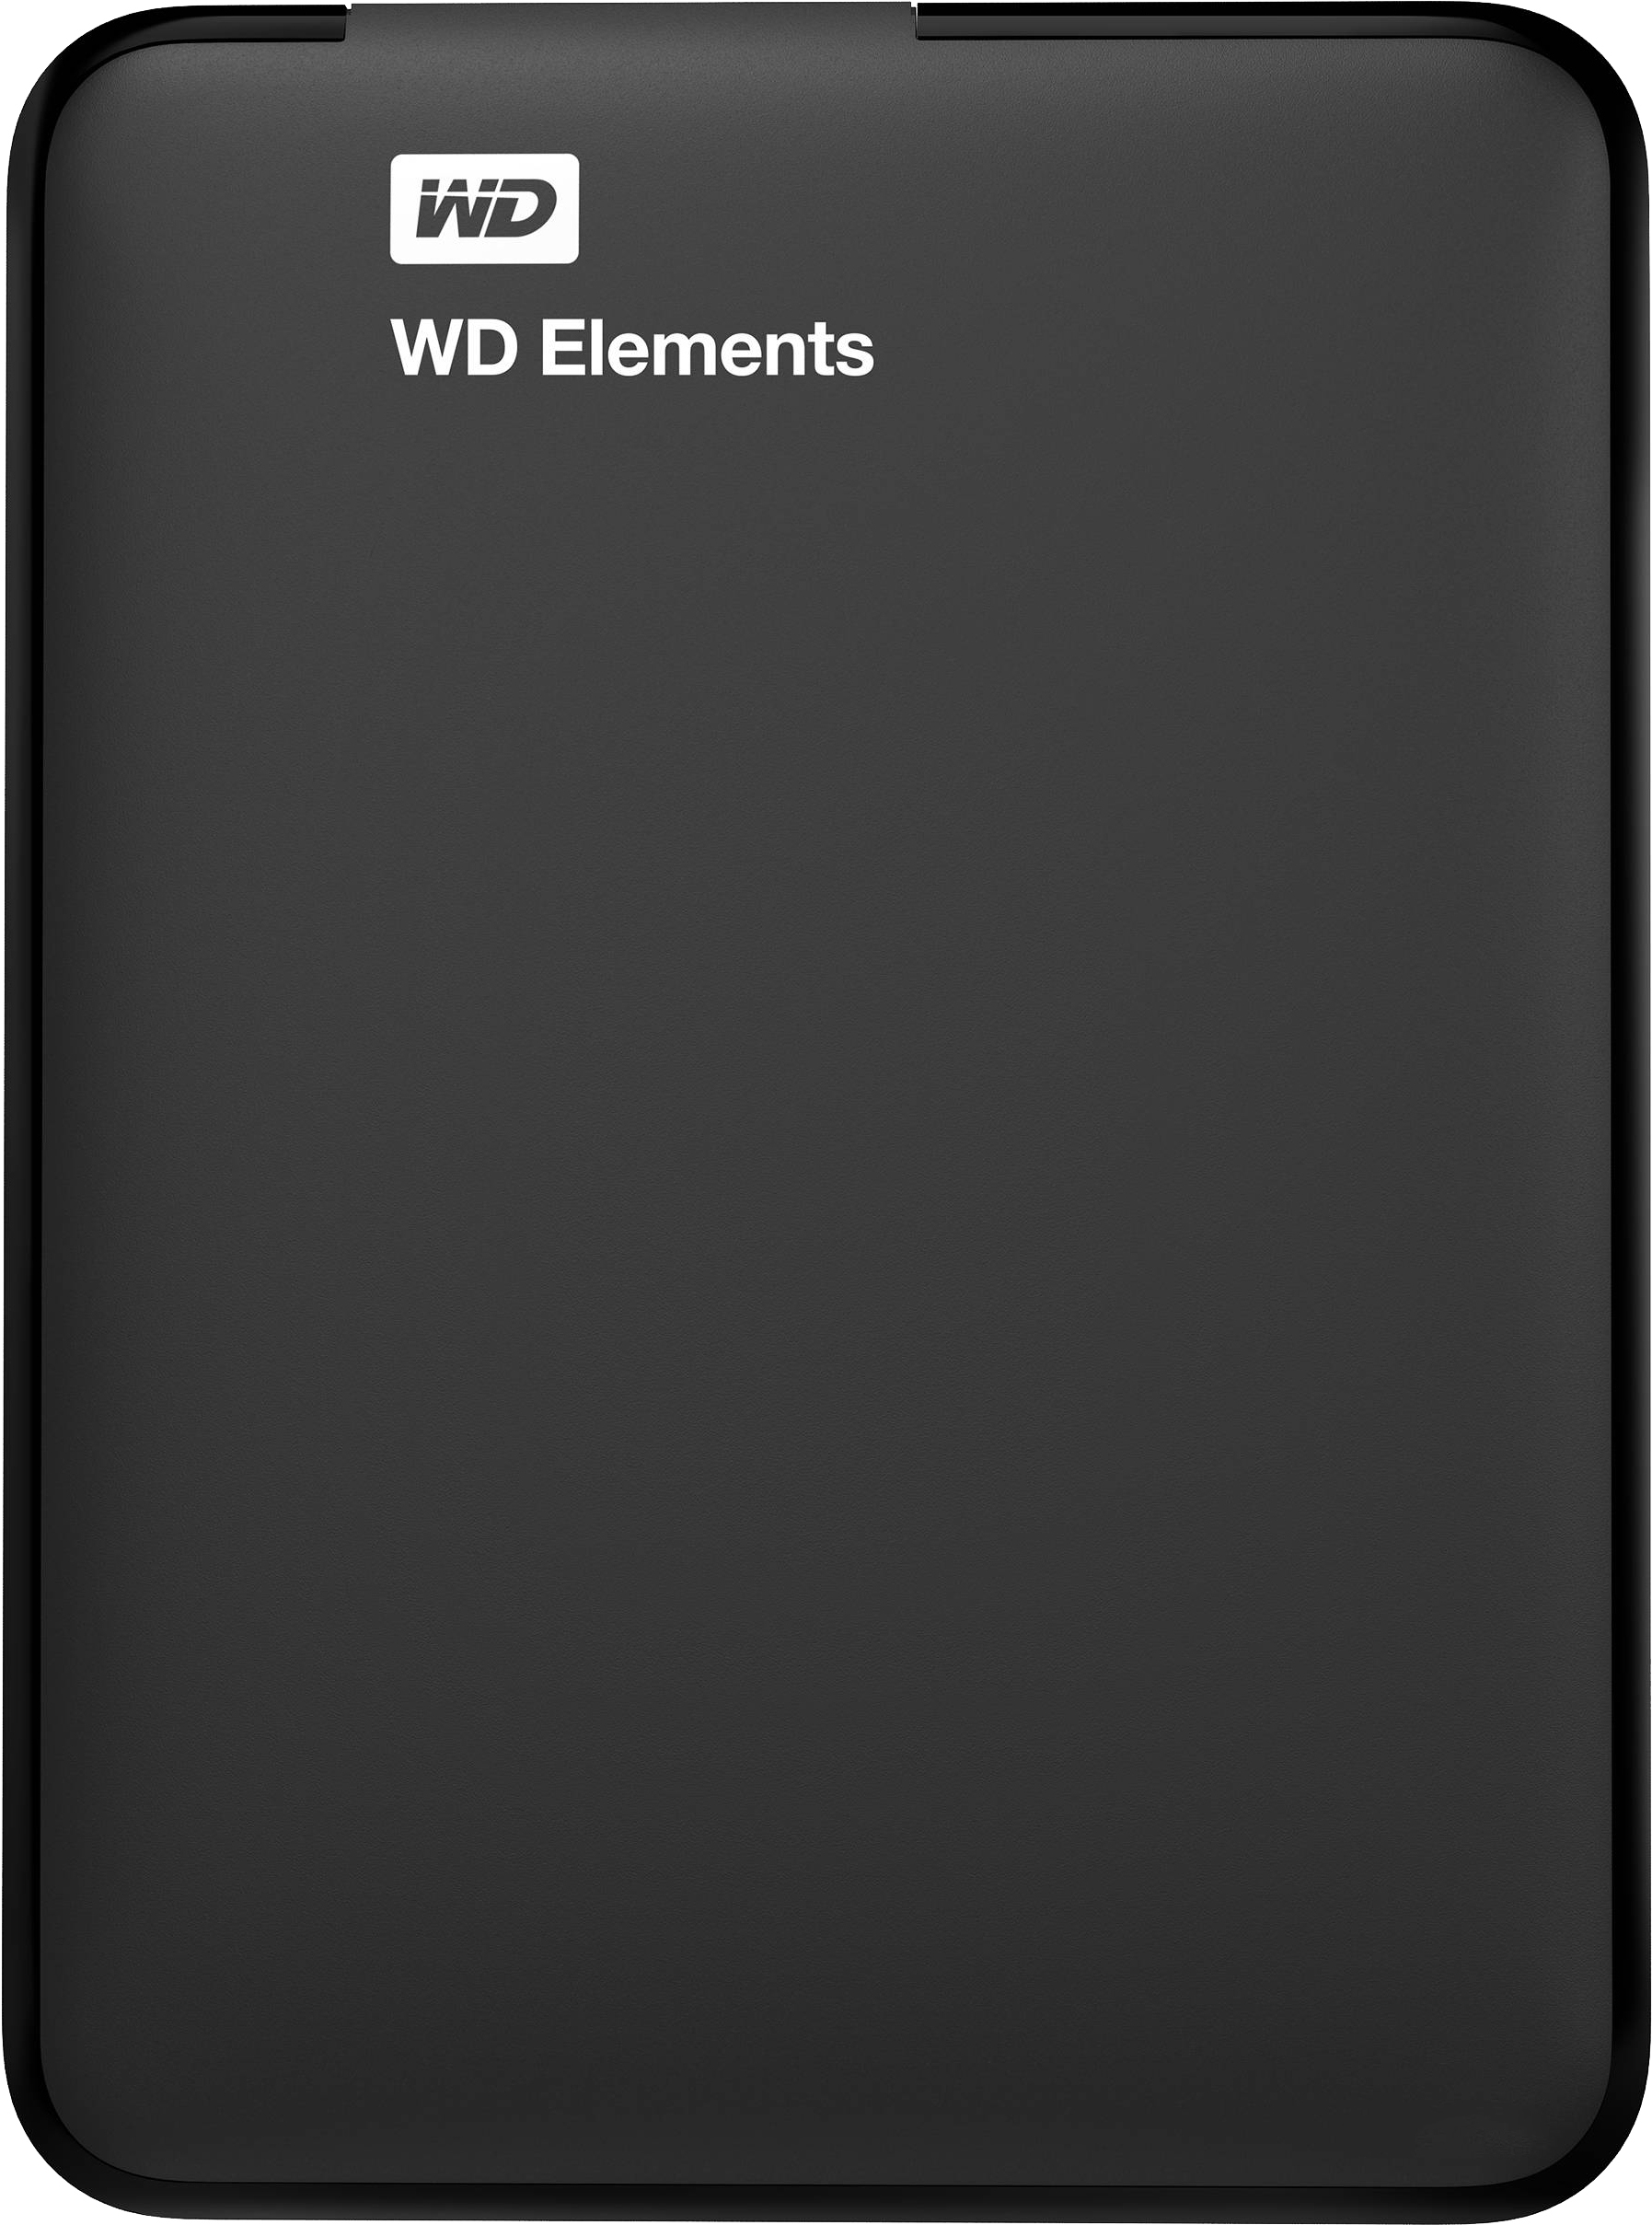 Жорсткий диск Western Digital Elements 1TB WDBUZG0010BBK-WESN 2.5 USB 3.0 External Black